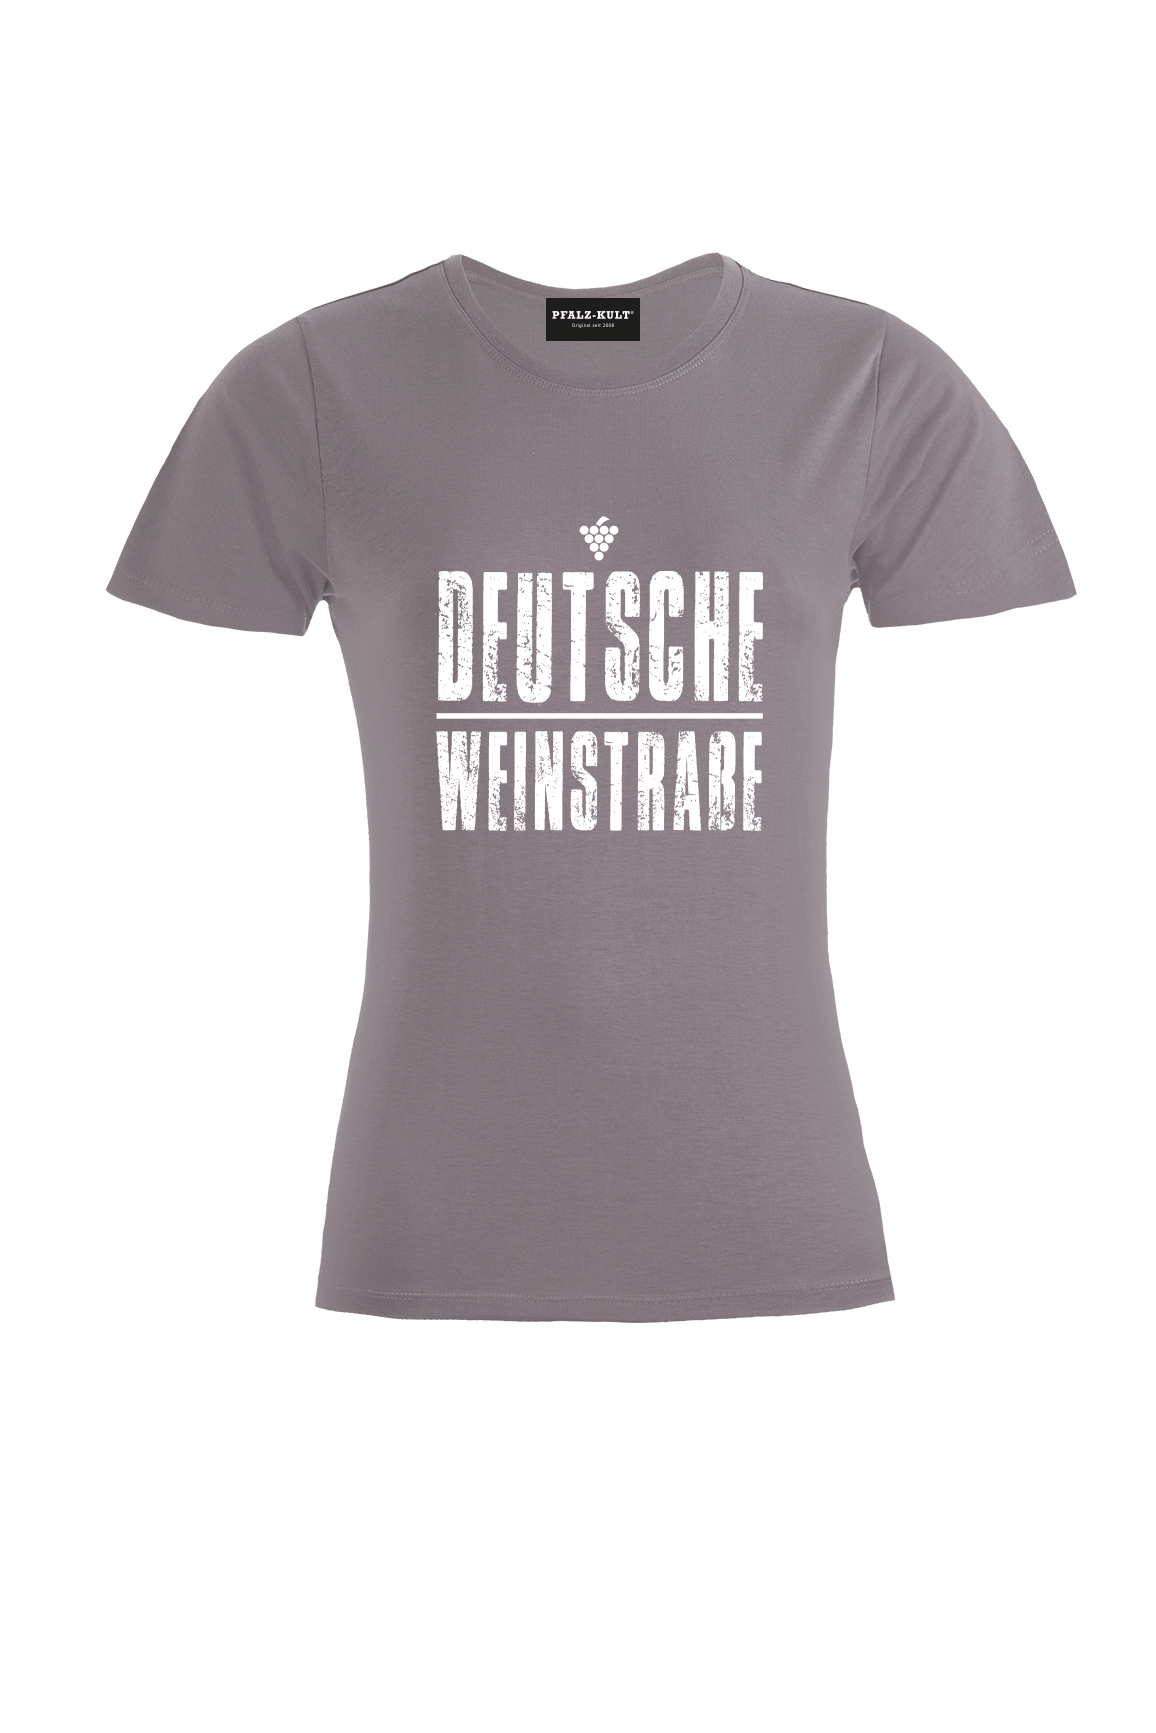 Graues TShirt mit dem Aufdruck "Deutsche Weinstrasse" .  Das ideale Geschenk für jedes Pfalzkind vom Textildruck Spezialisten aus Bad Dürkheim.